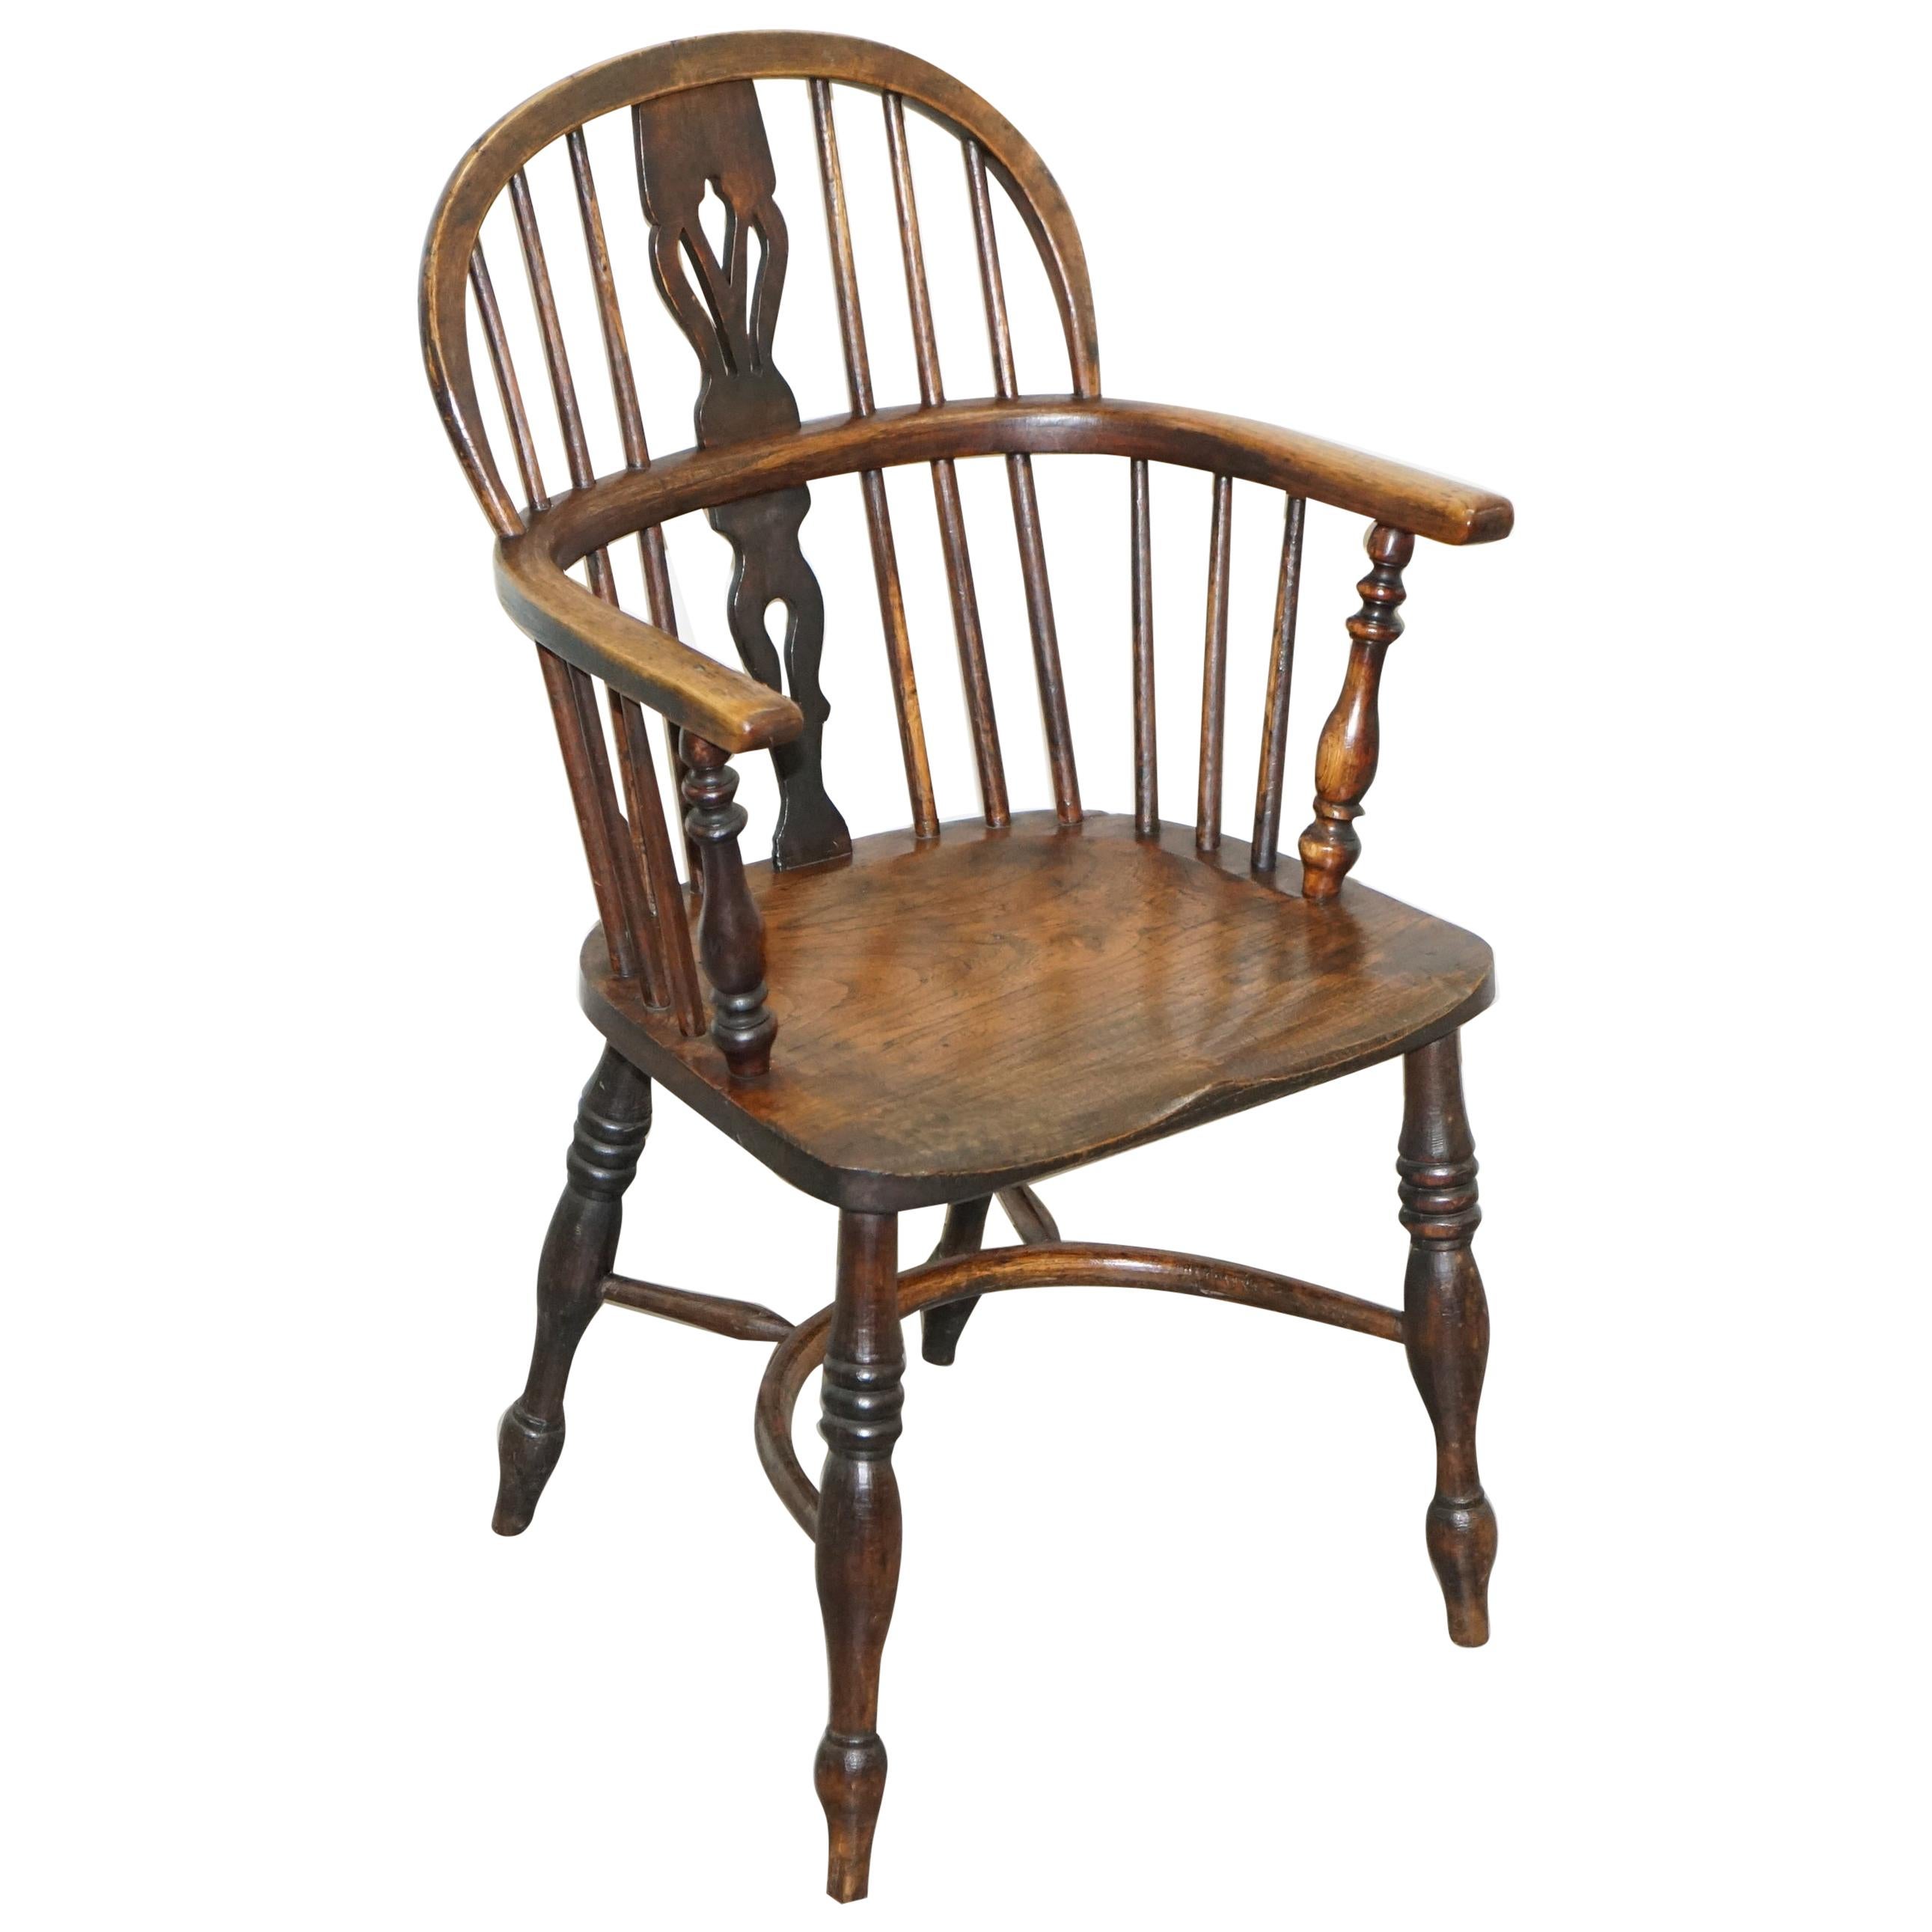 Englischer klassischer antiker viktorianischer Windsor-Sessel aus Ulme und Eschenholz aus dem 19. Jahrhundert